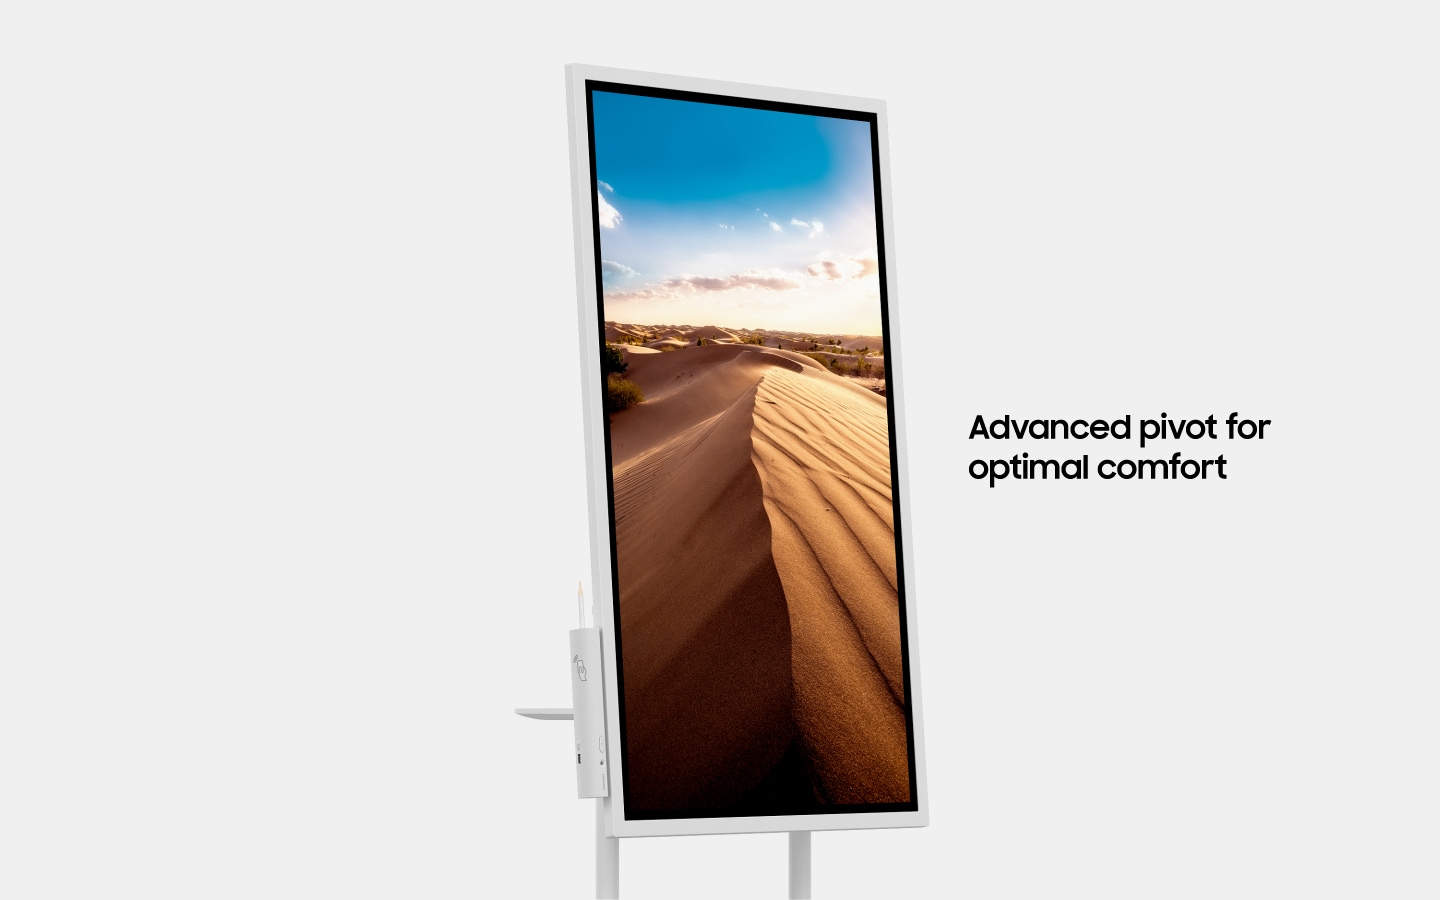 Une image qui présente un appareil Samsung Flip qui tourne, afin de montrer le côté et la face avant de l’appareil, avec un texte qui indique "Pivot de haute qualité pour le confort optimal de l'utilisateur" (6-2)